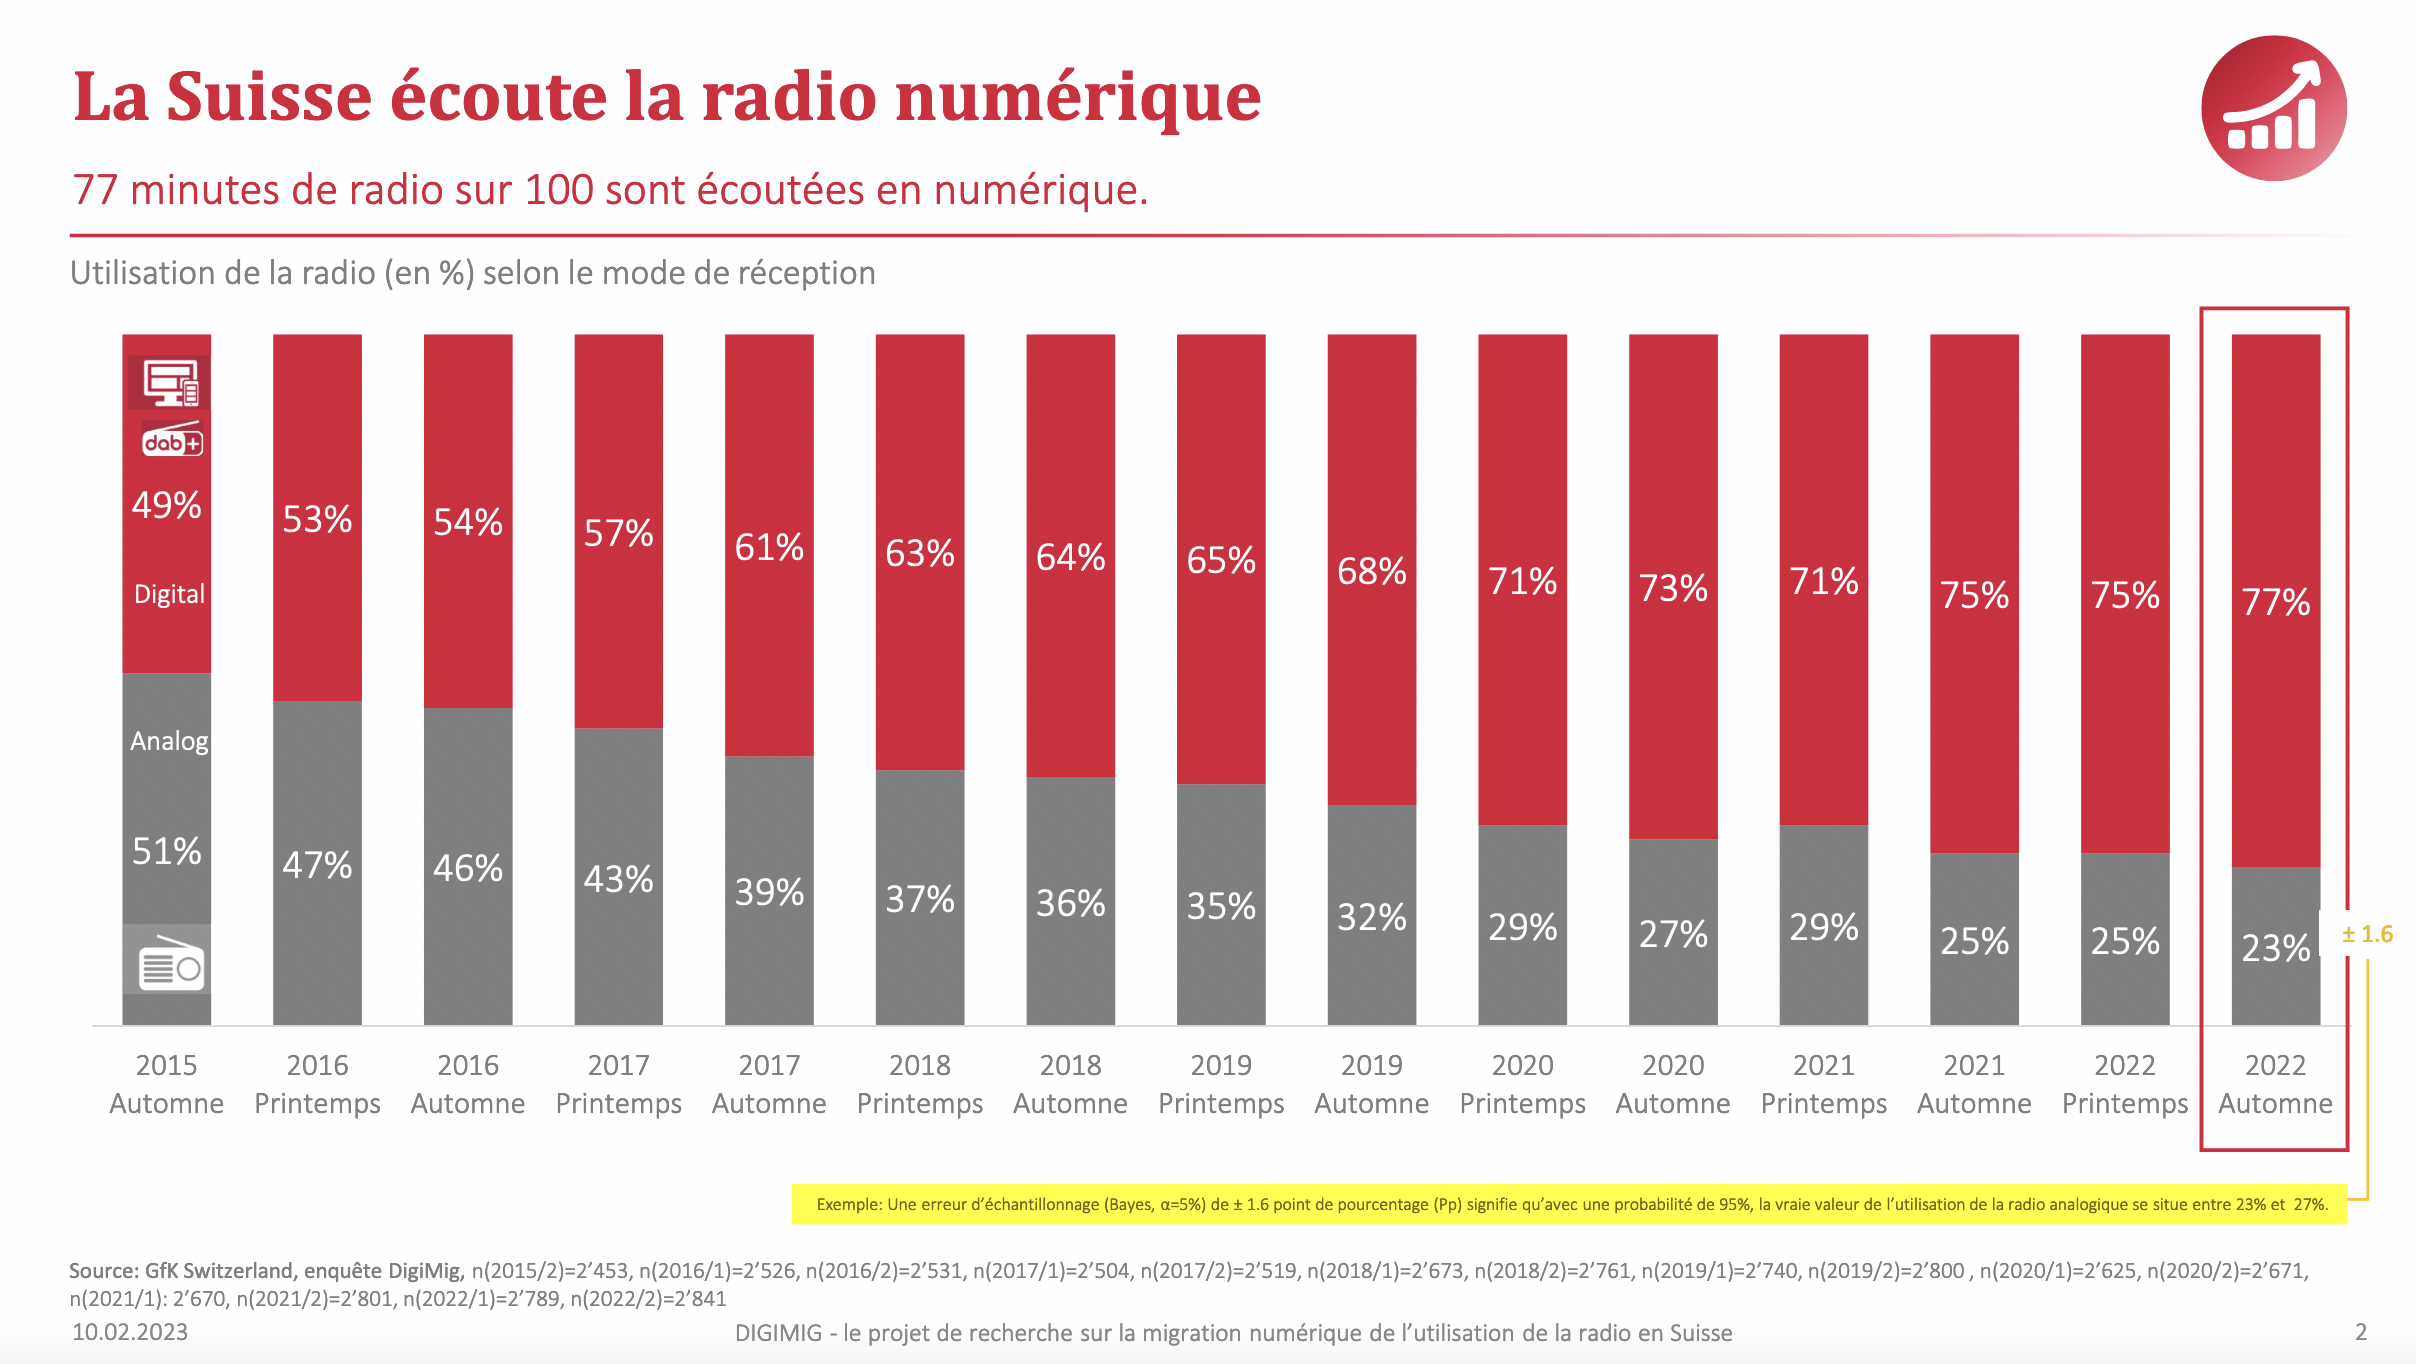 La Suisse écoute la radio numérique